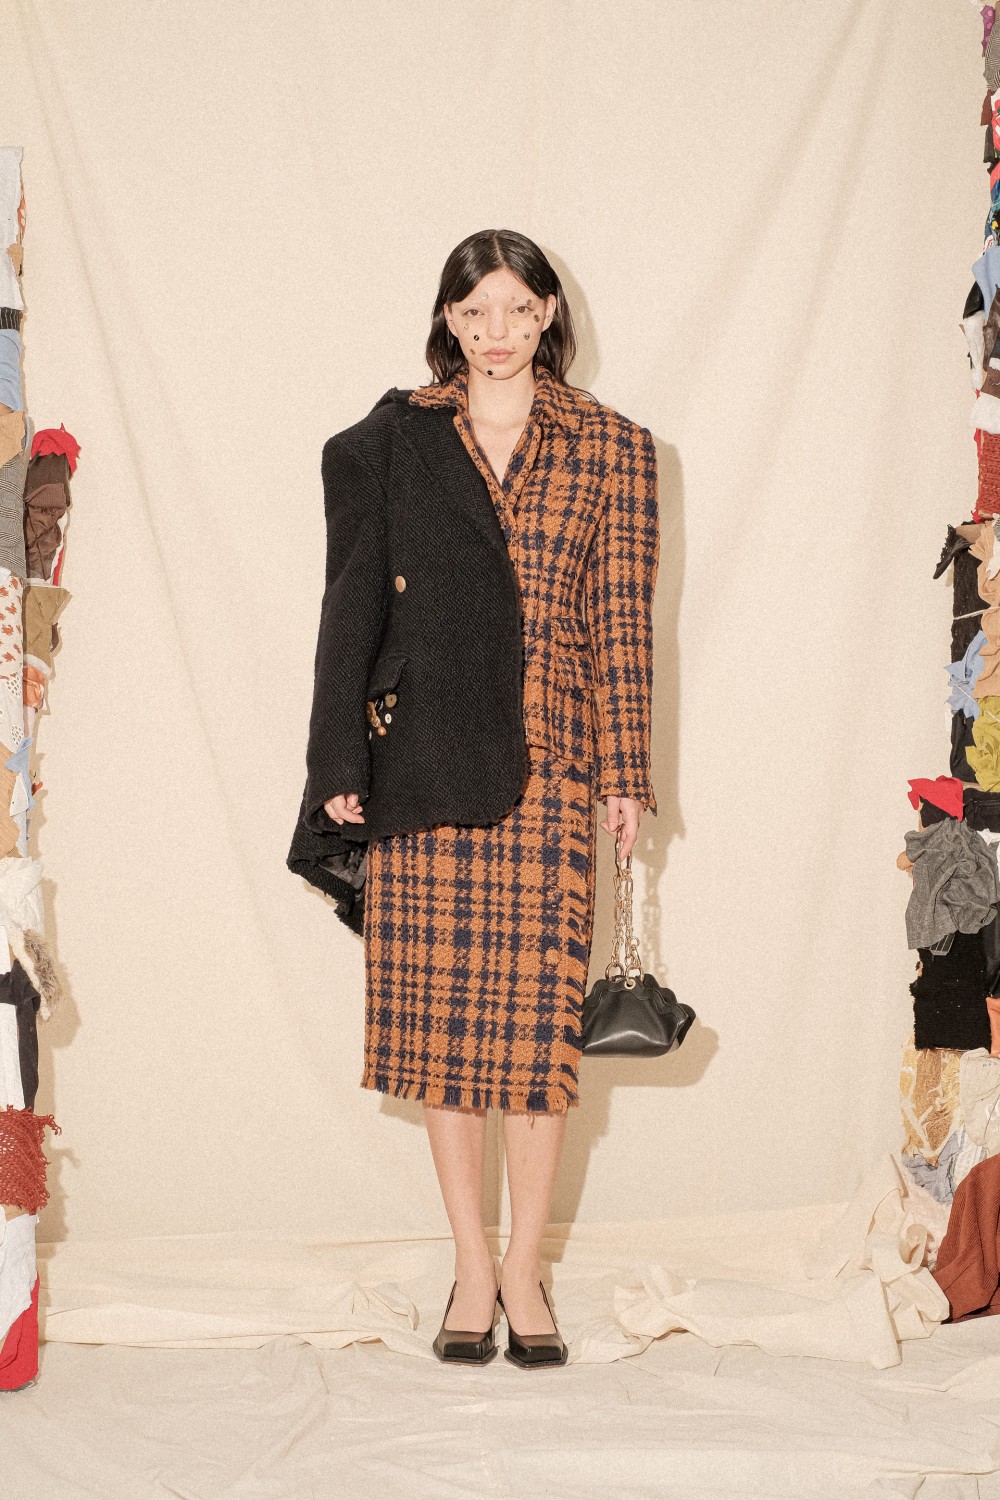 Джулия Фокс, вдохновение Японией и агендерность на Неделе моды в Нью-Йорке